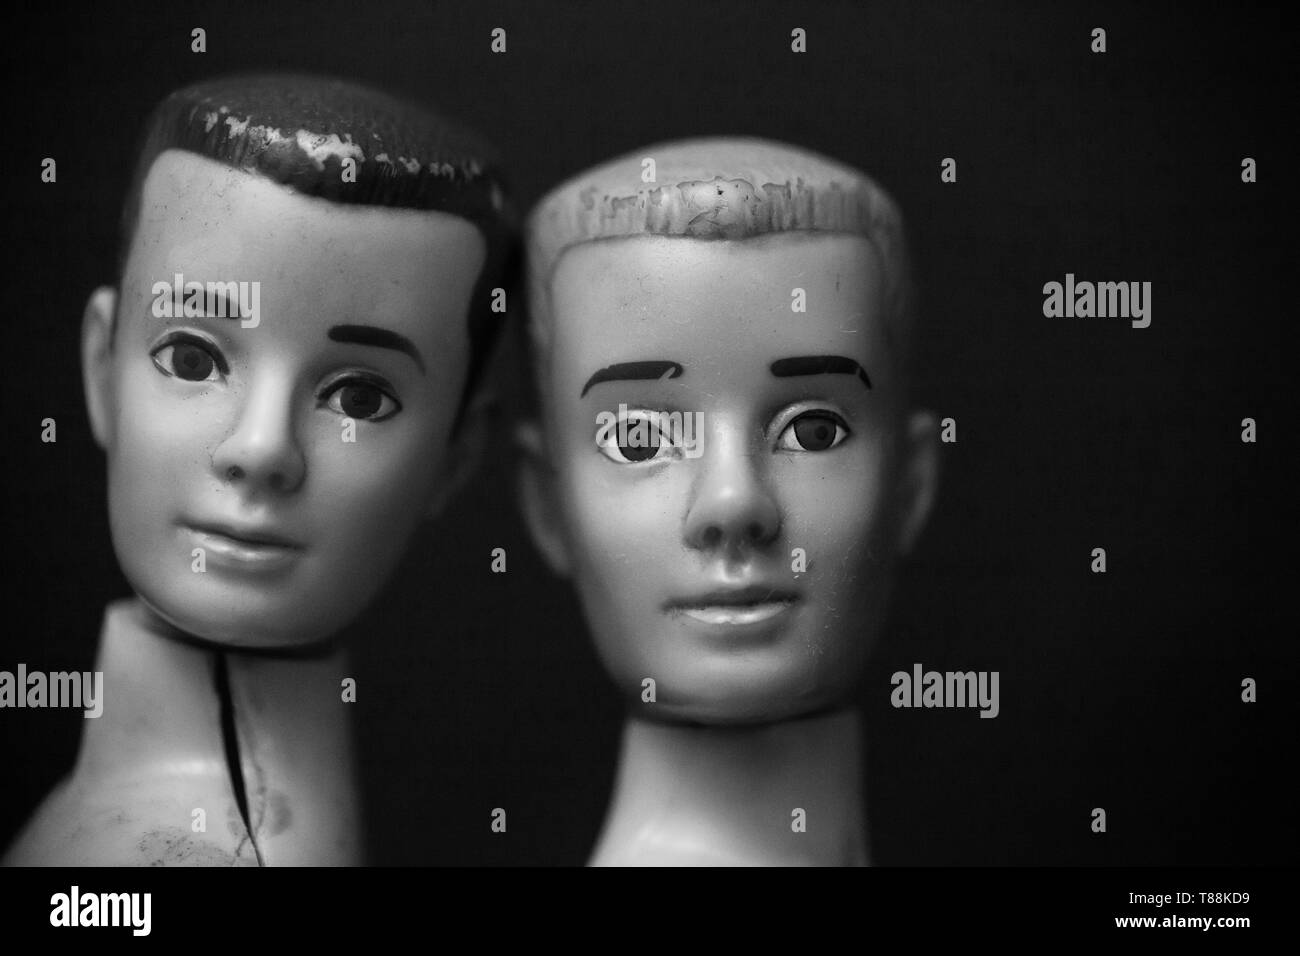 WOODBRIDGE, NEW JERSEY - Mai 10, 2019: Zwei Mattel Ken Puppen aus den 60er Jahren in Schwarz-weiß fotografiert werden Stockfoto